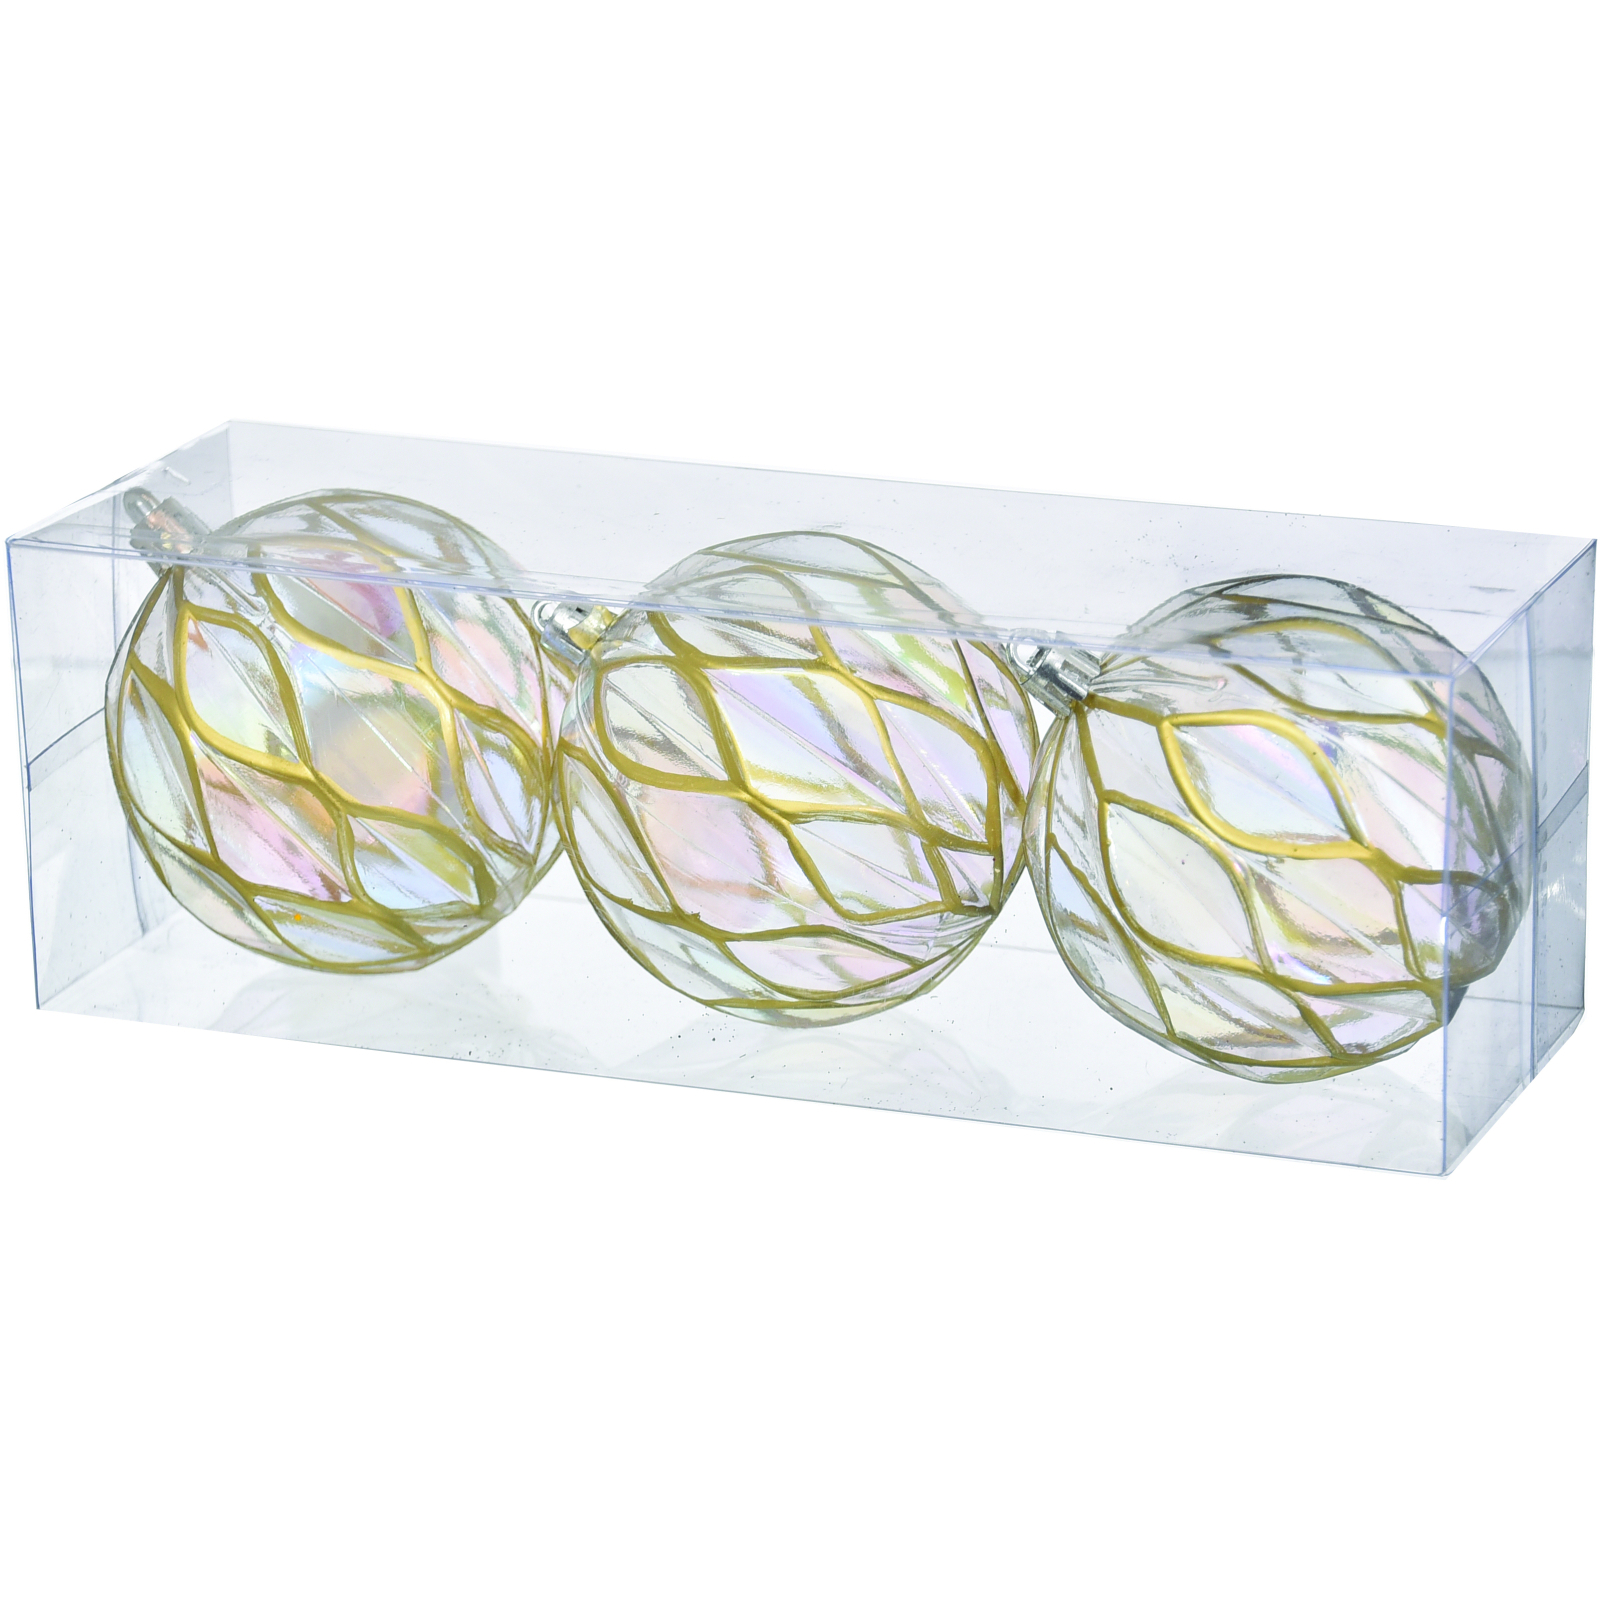 Елочная игрушка Jumi набор прозрачных шариков 3 шт, пластик, 8см, золотая сетка (5900410394919)